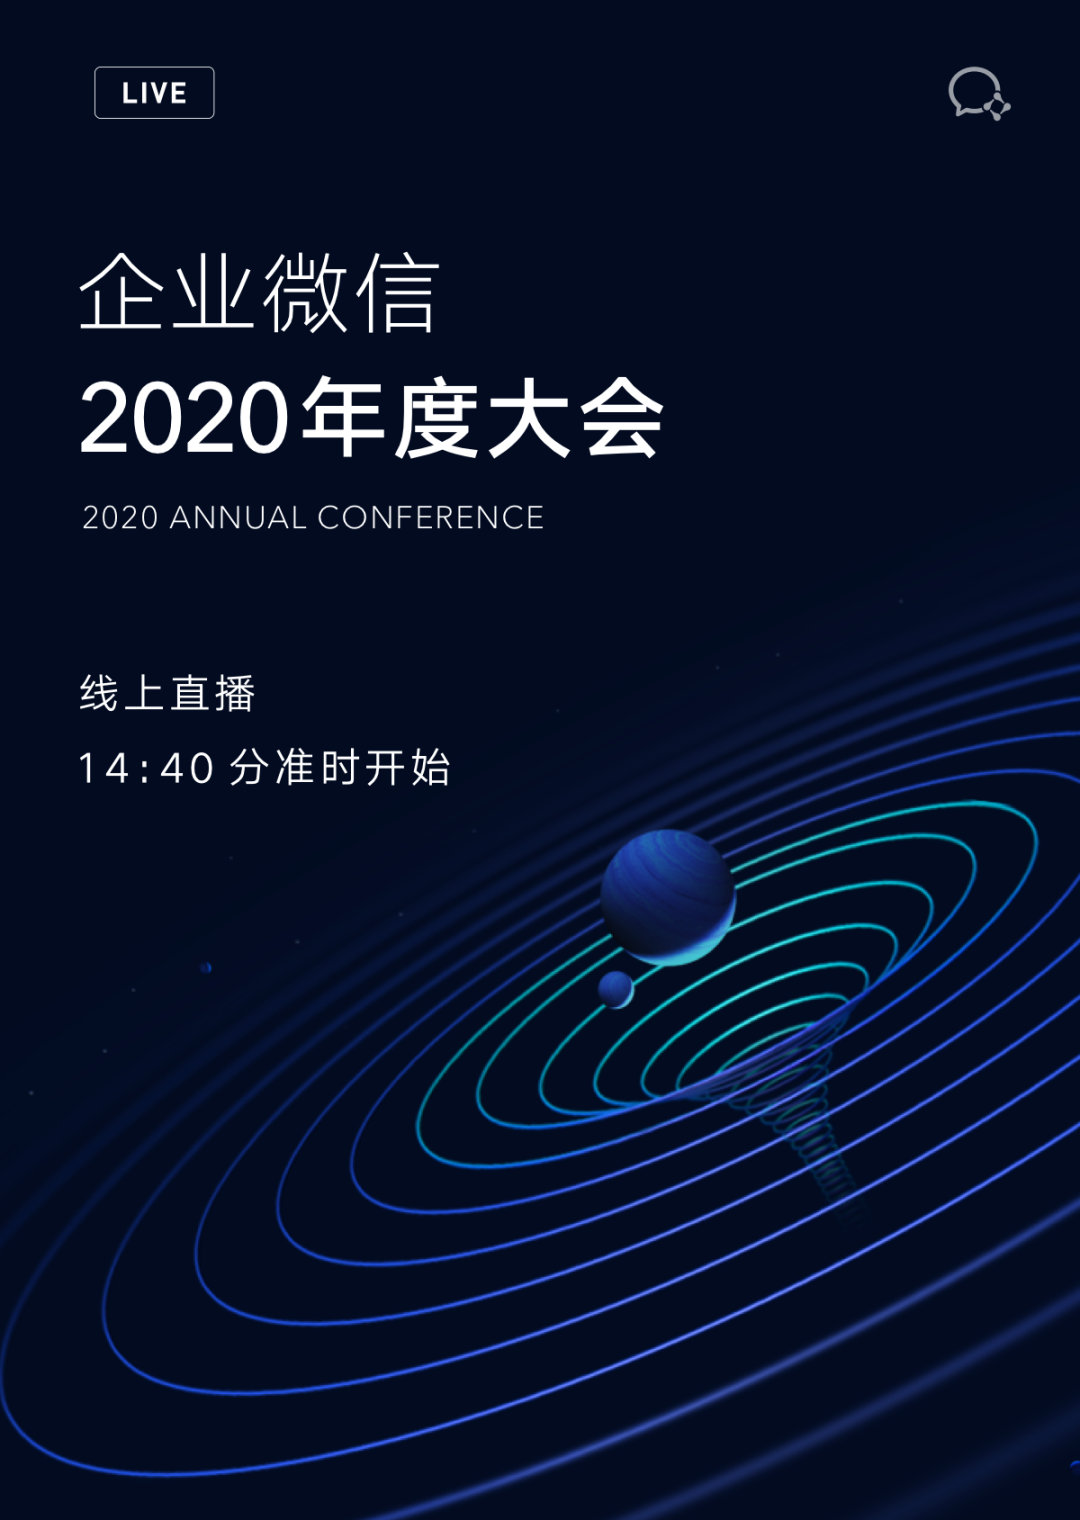 企业微信2020年度大会，现在开始!